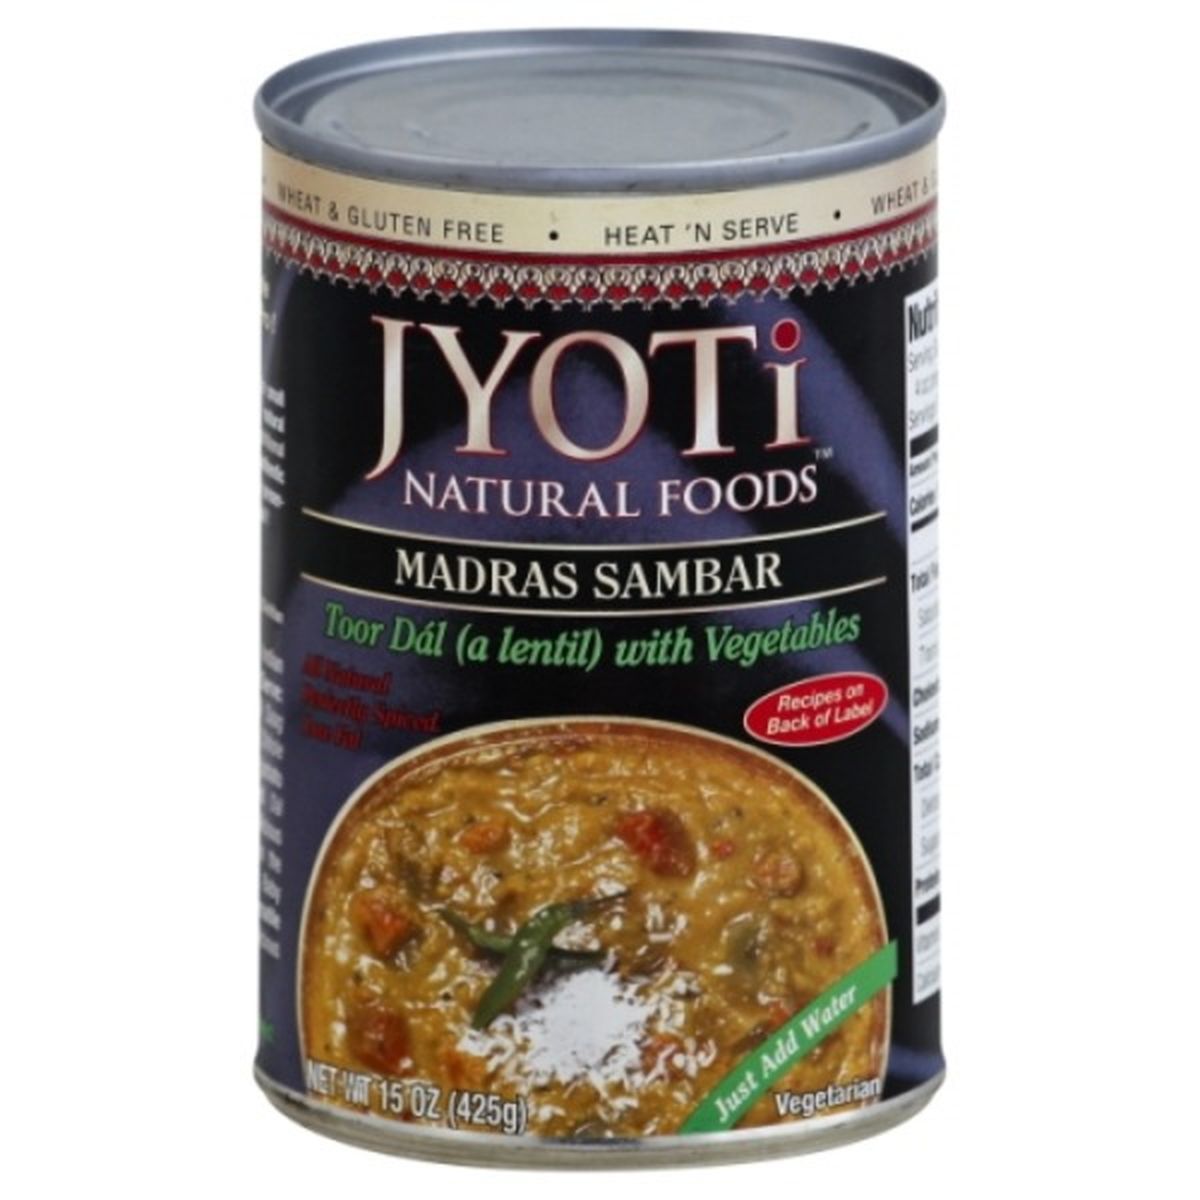 Calories in Jyoti Madras Sambar